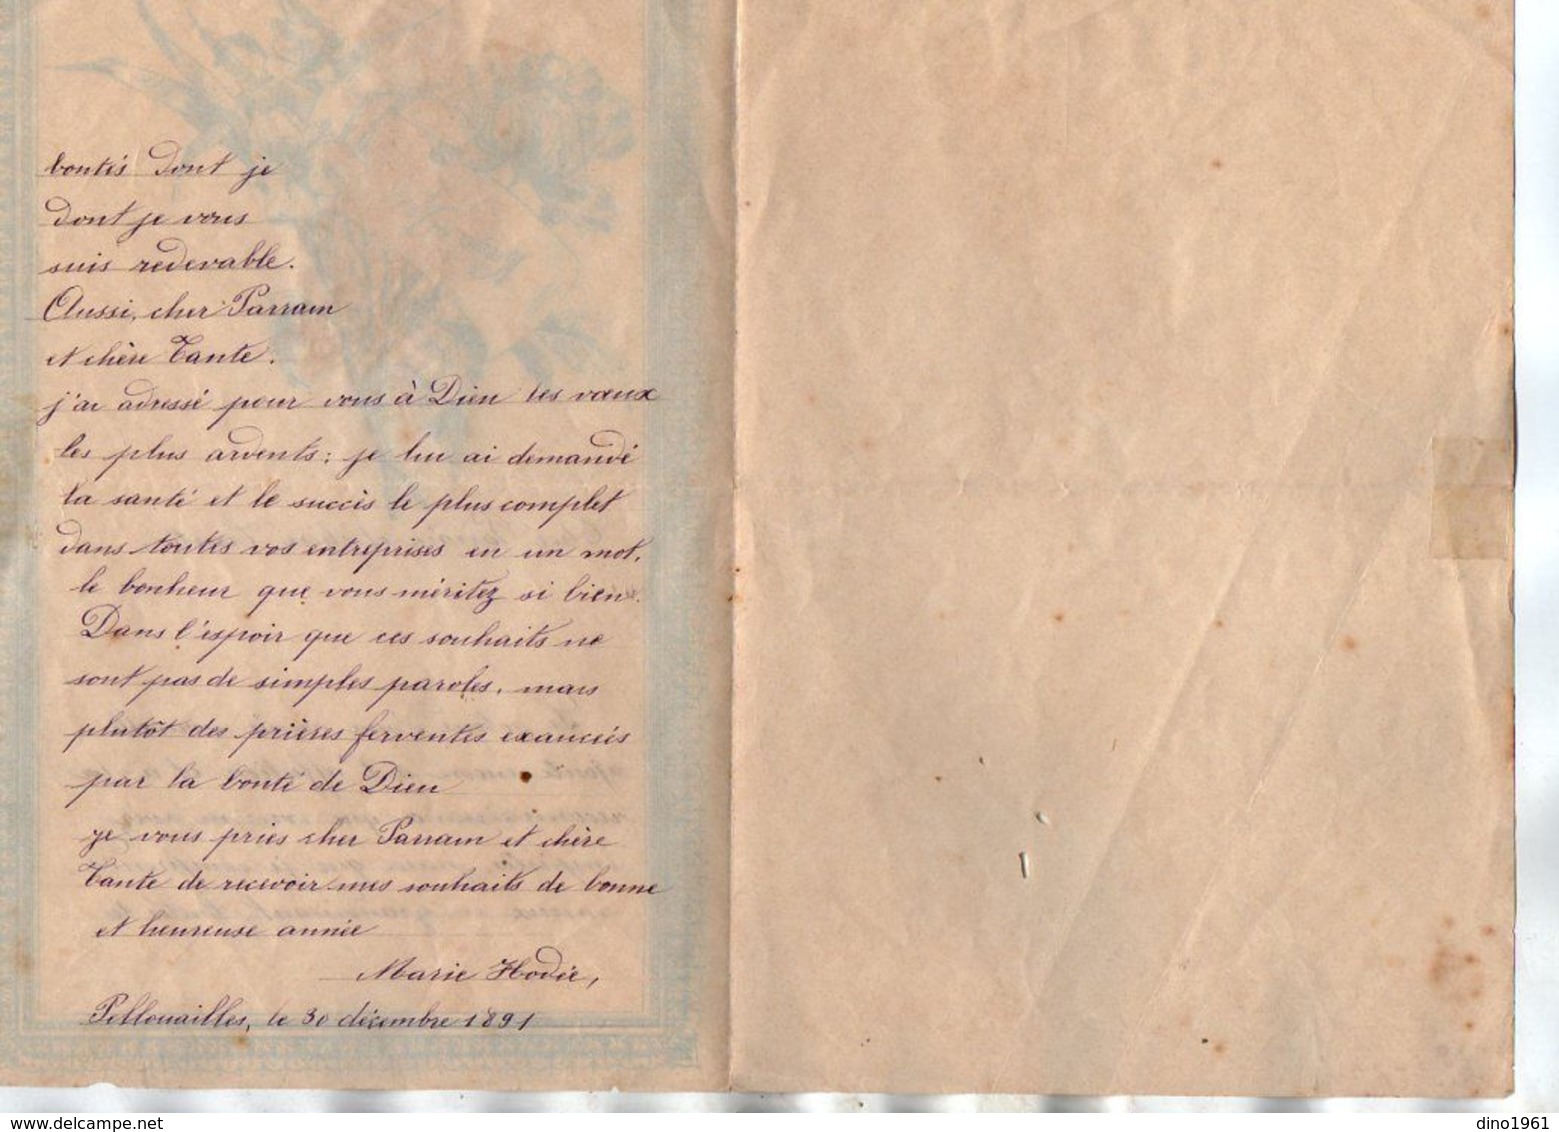 VP17.248 - 1891 - Lettre Illustrée Double Page & Découpi Fleurs - Melle Marie HODEE à PELLOUAILLES - Blumen